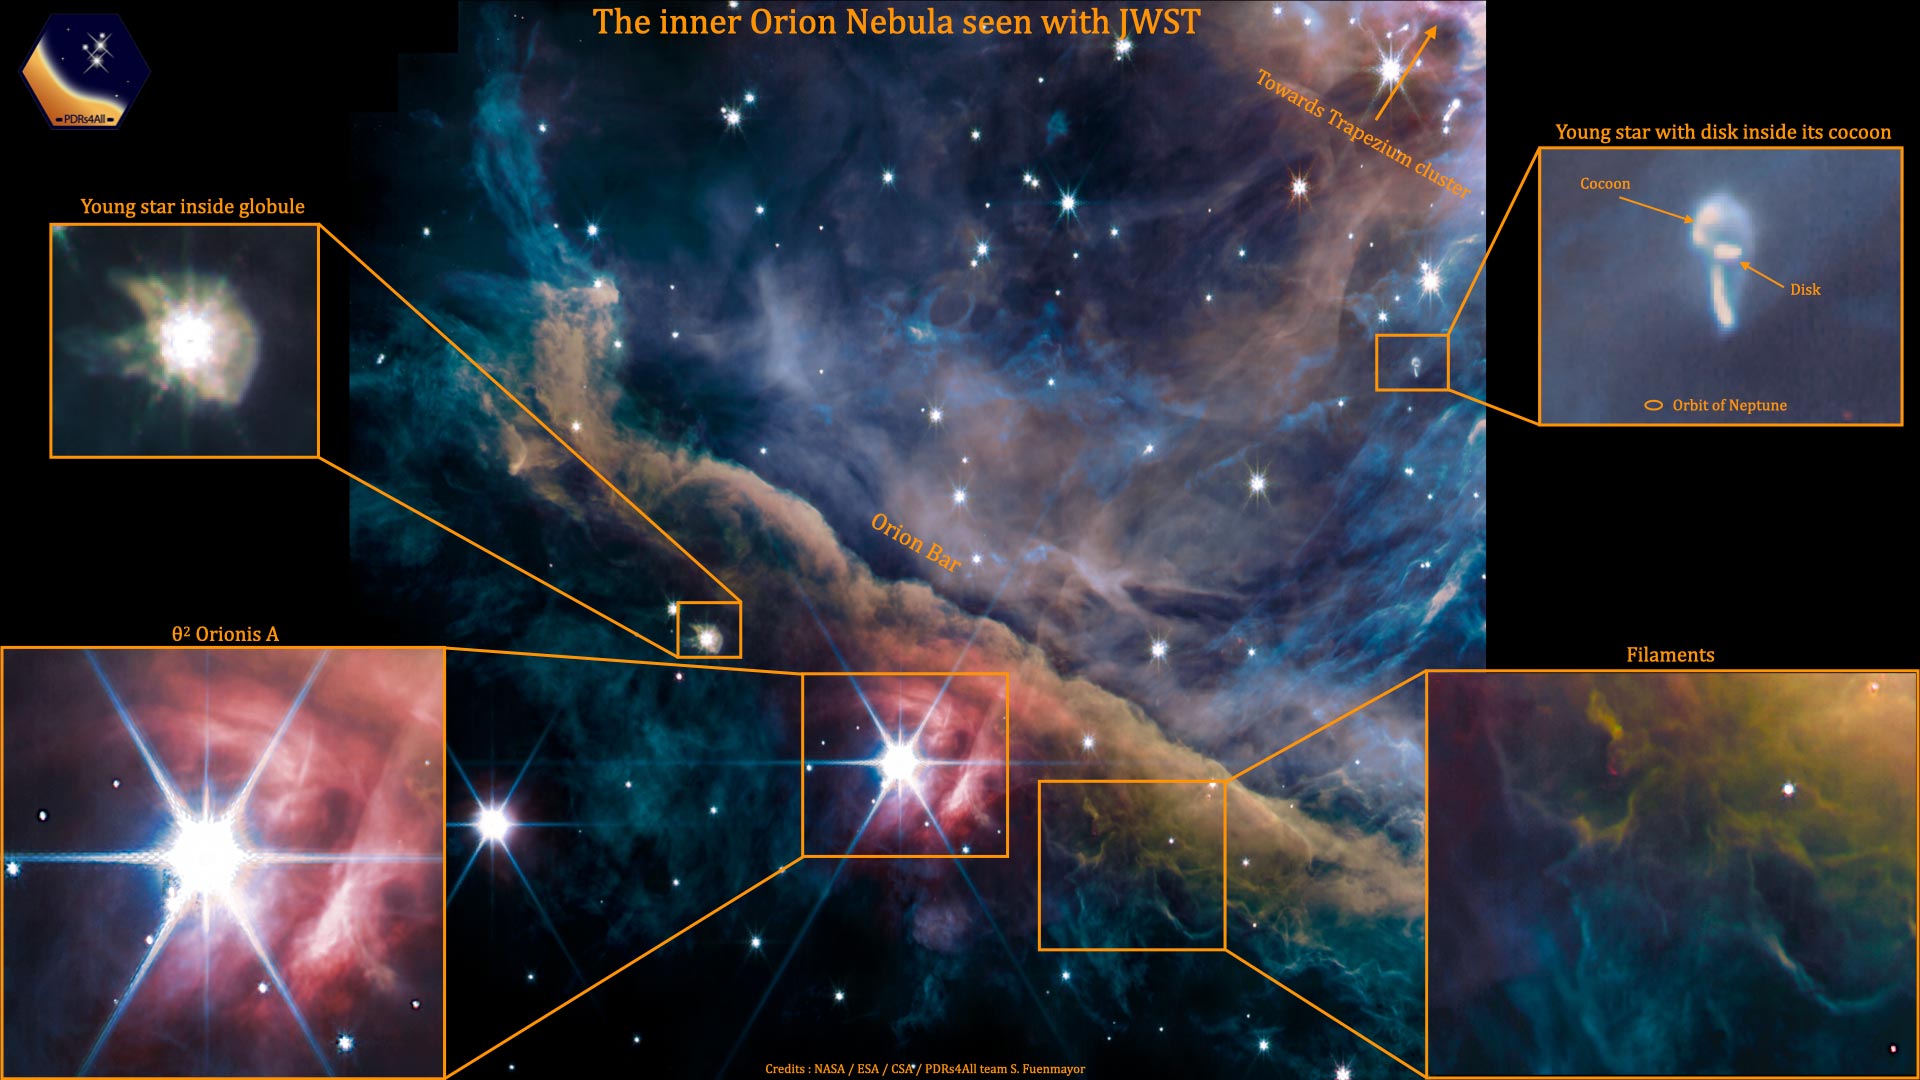 https://scitechdaily.com/images/JWST-Inner-Orion-Nebula.jpg